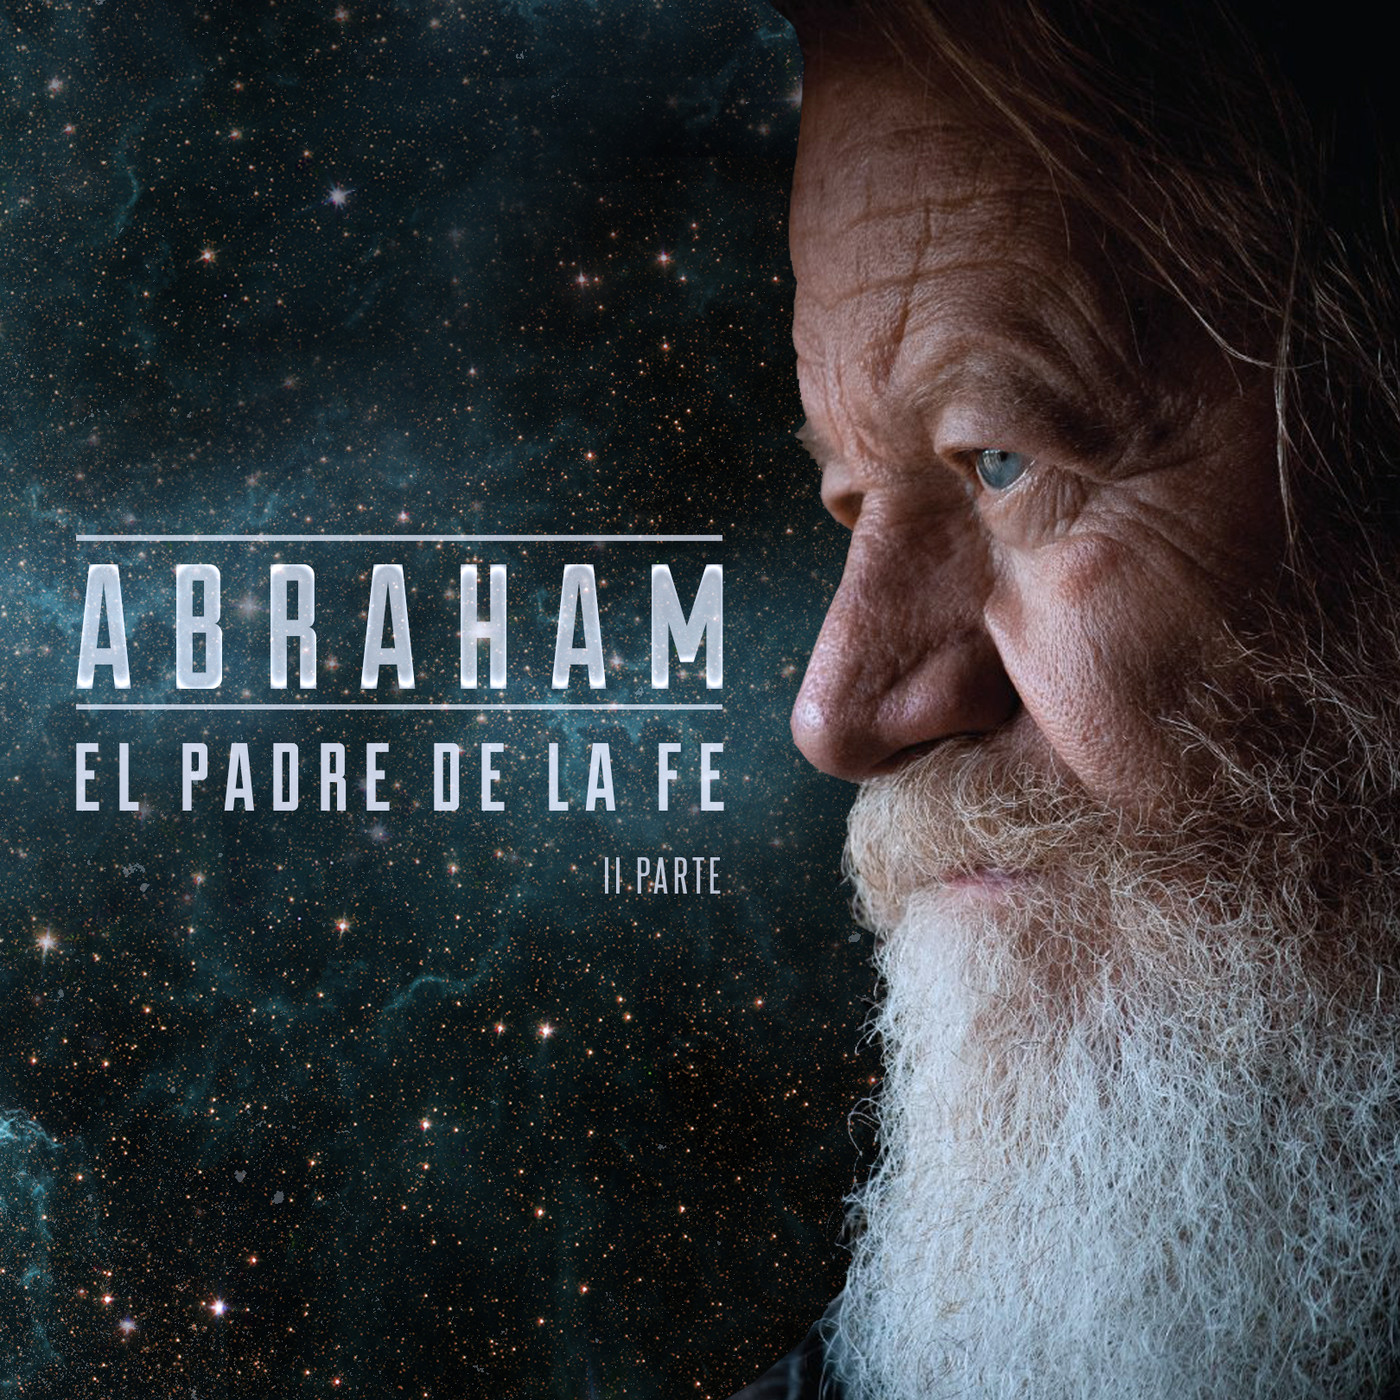 201809 - Abraham, el padre de la fe II parte - Podcast en iVoox